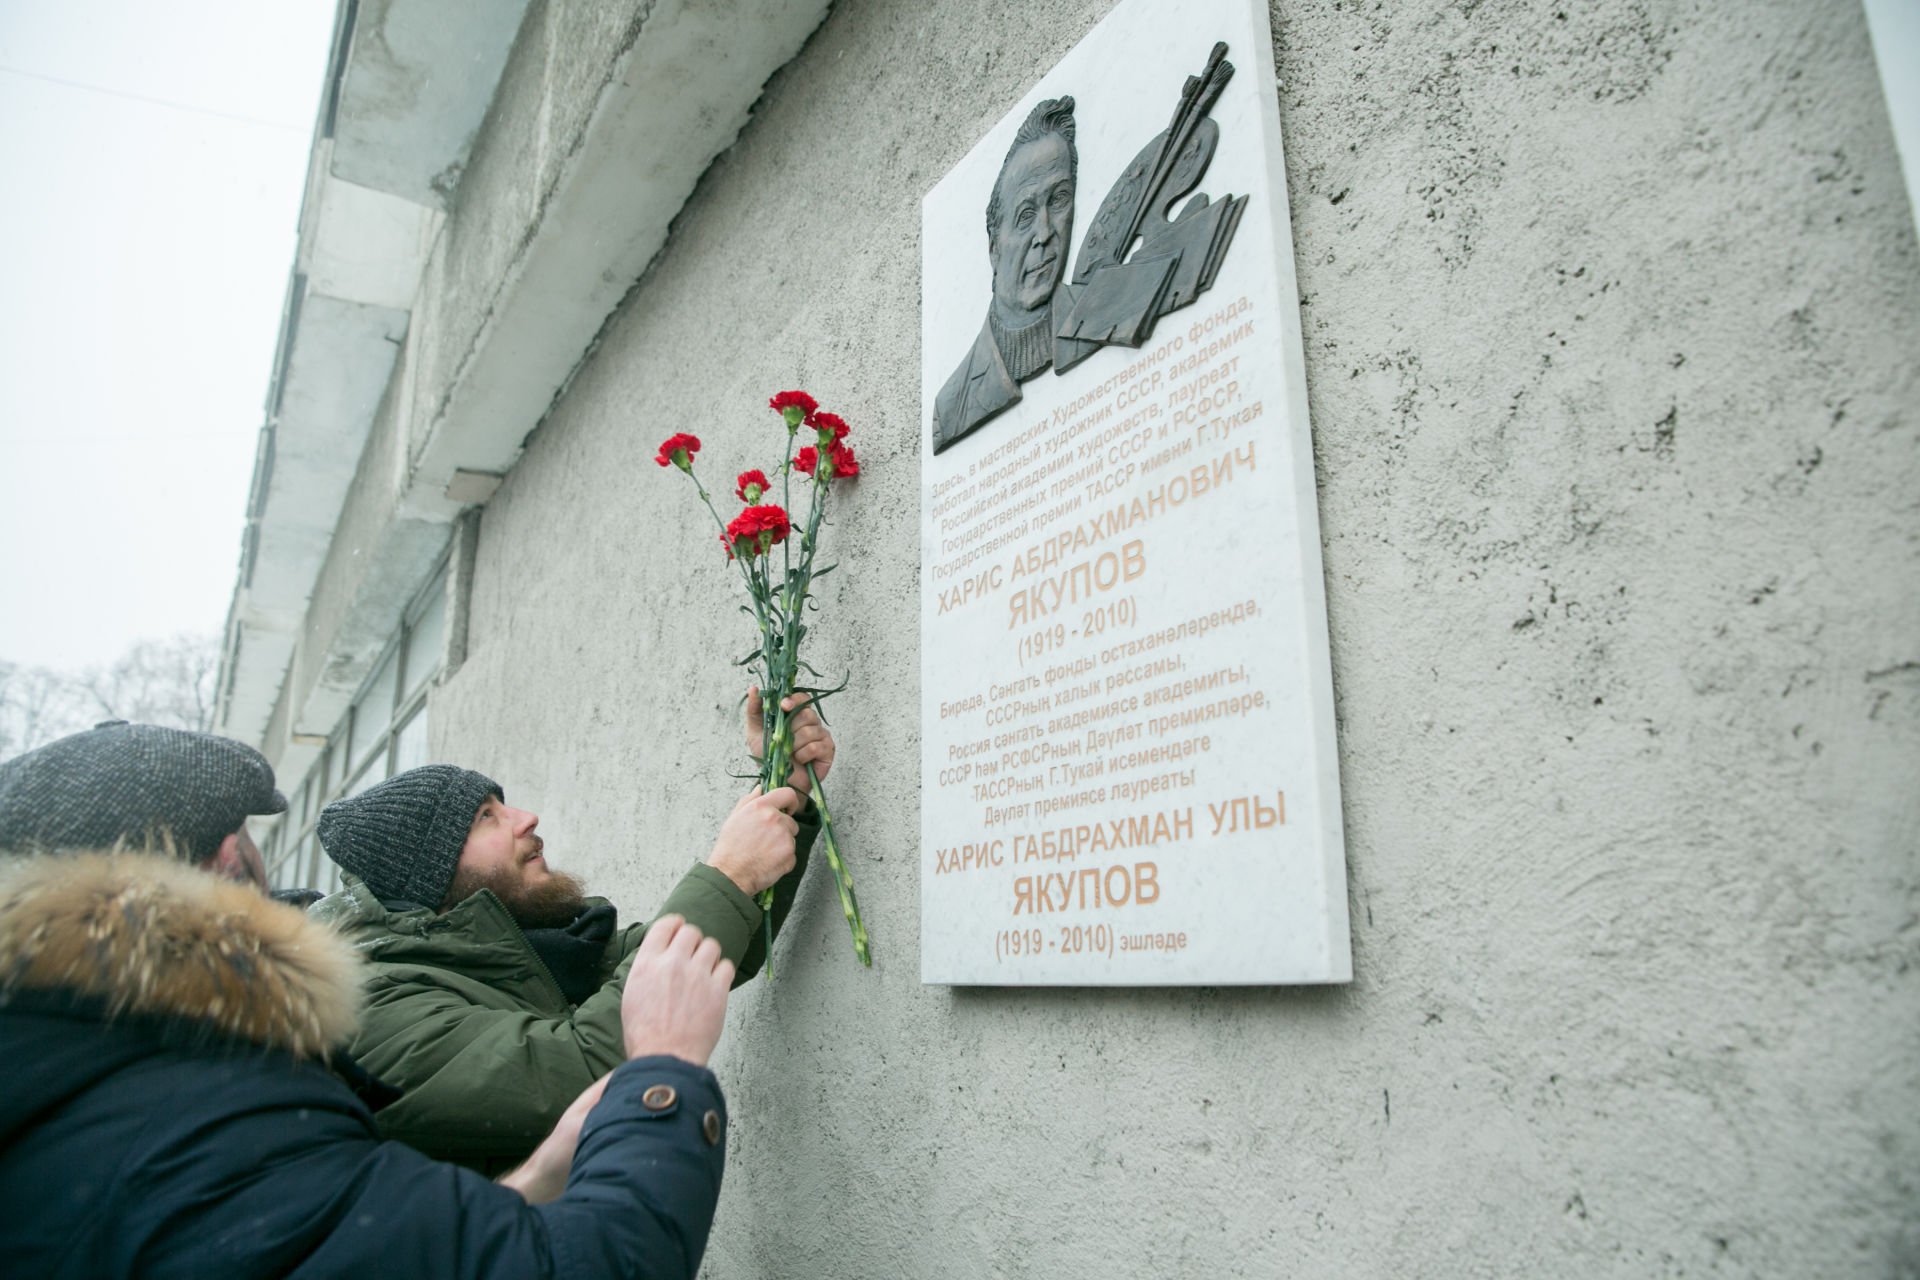 Дань великому художнику. Сегодня была открыта мемориальная доска  Харису Якупову.